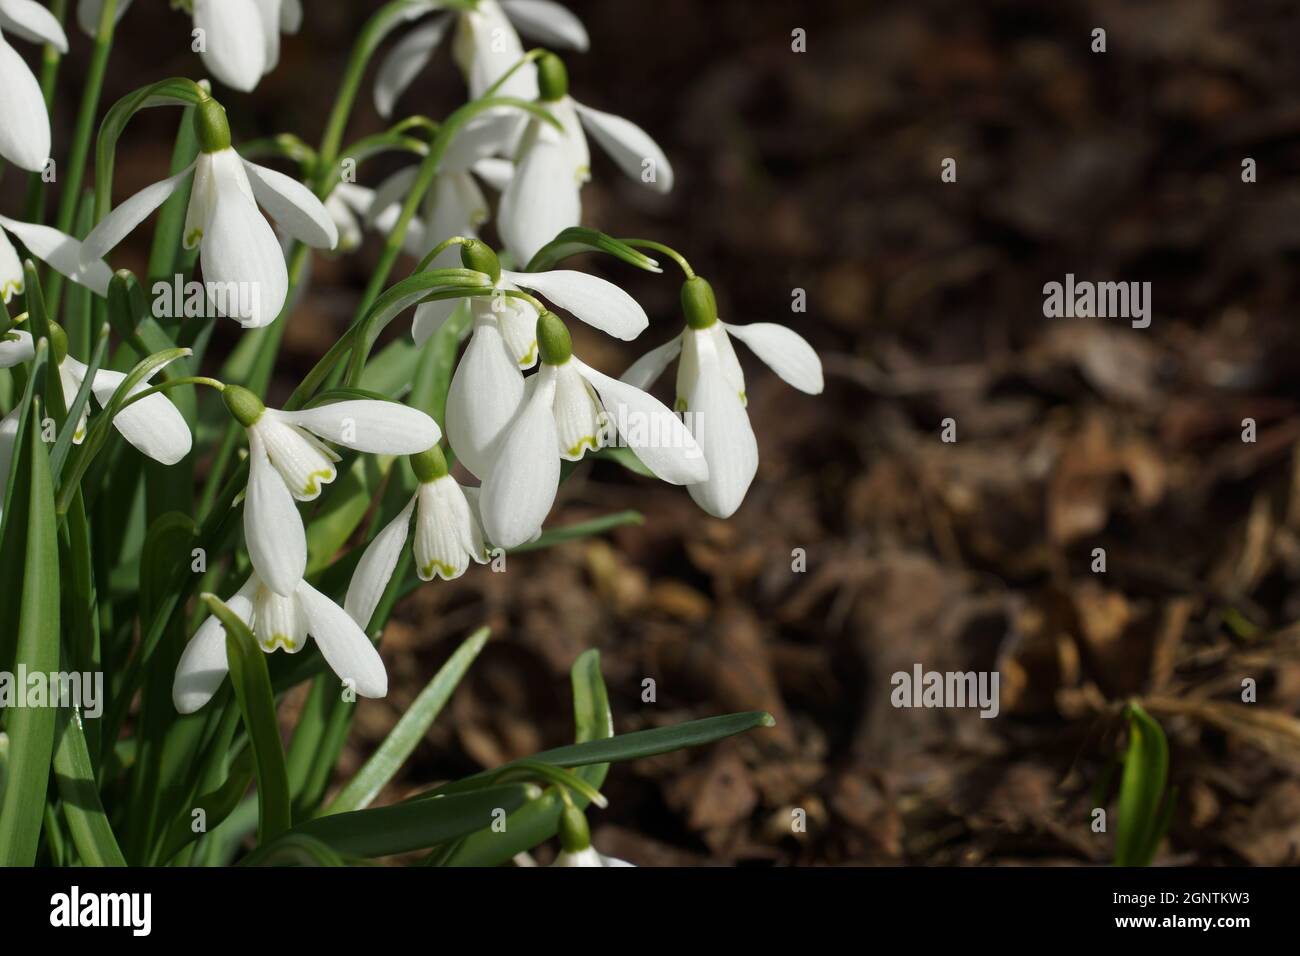 Galanthus nivalis, snowdrop, snowdrop común. Flores blancas de cerca. Foto horizontal. Foto de stock